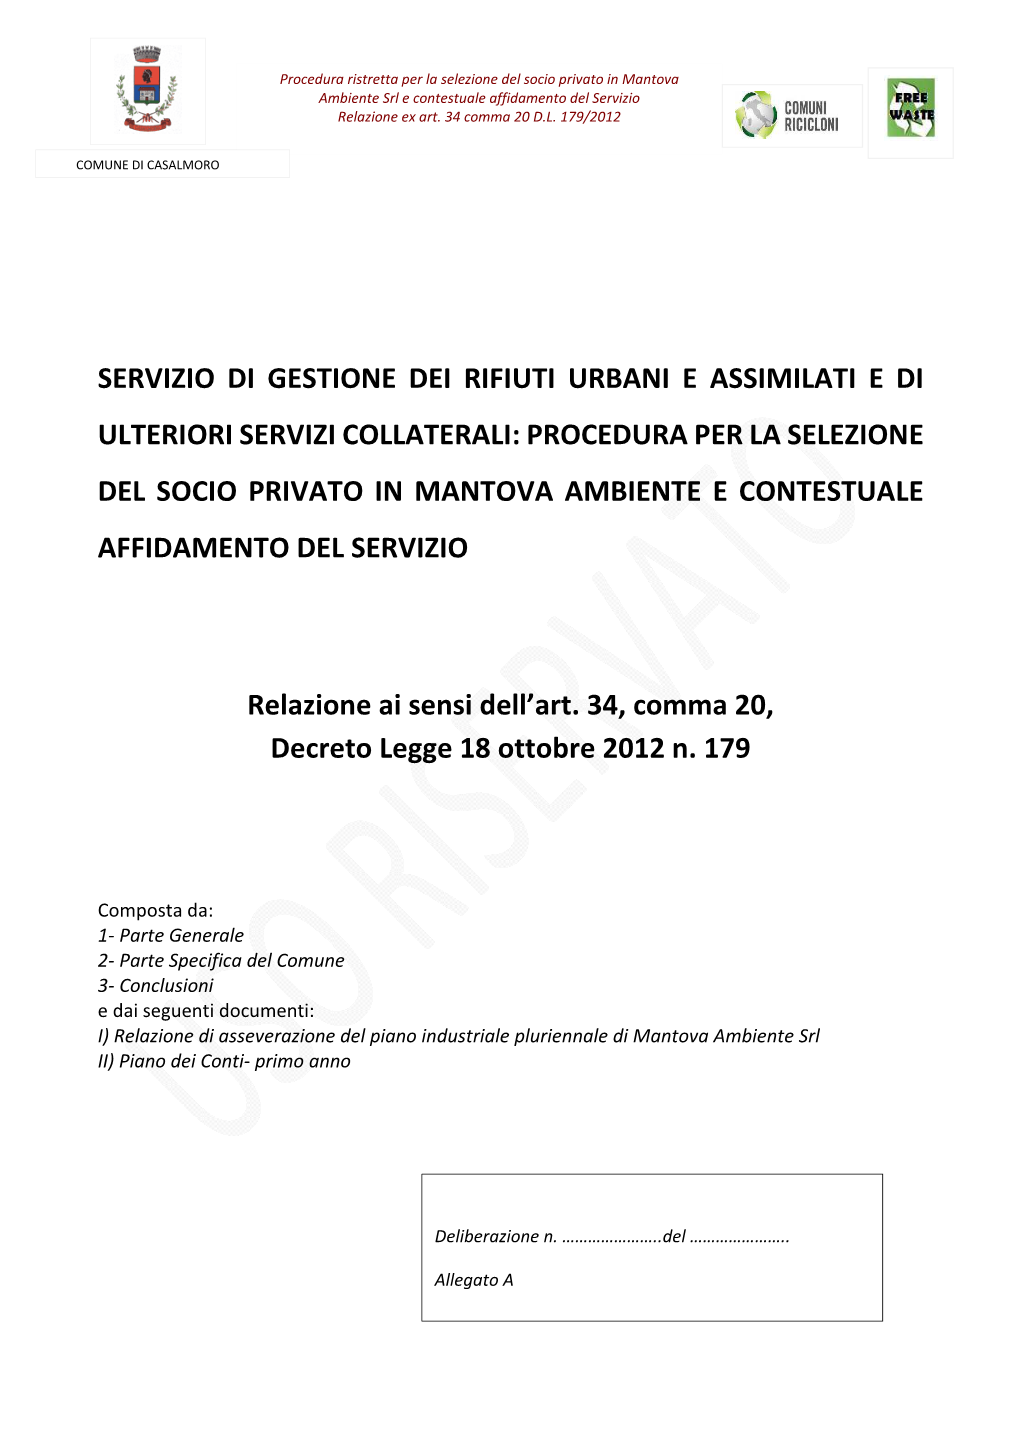 All.A-Relazione Ex Art 34-Casalmoro